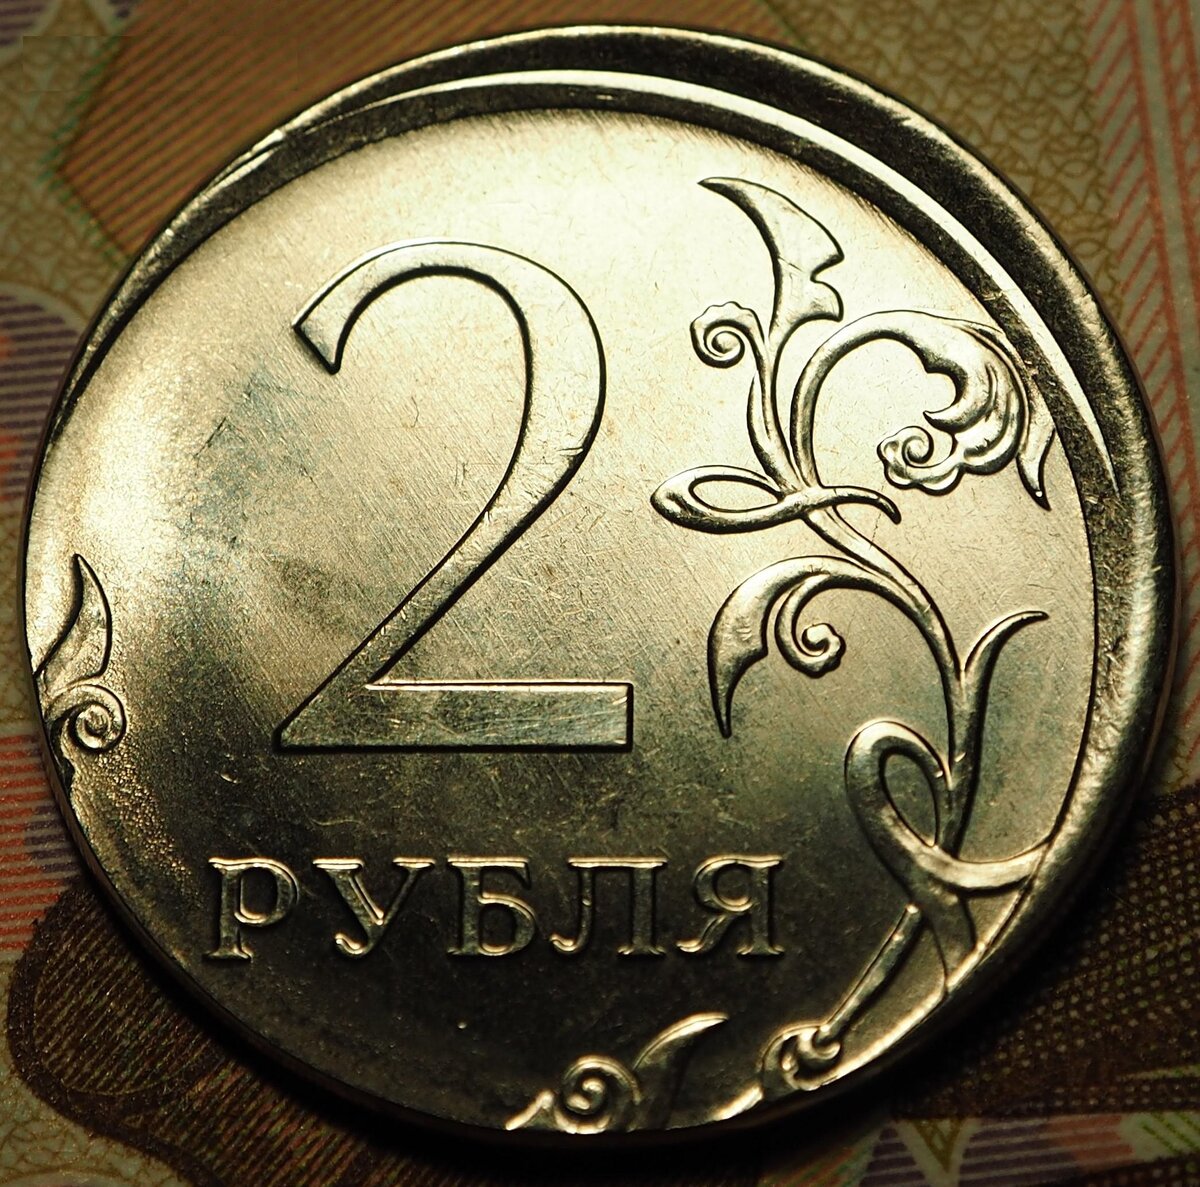 2000 Рублей мелочью. Сколько стоит монета МБА ХБА. Дать сдачи с рубля